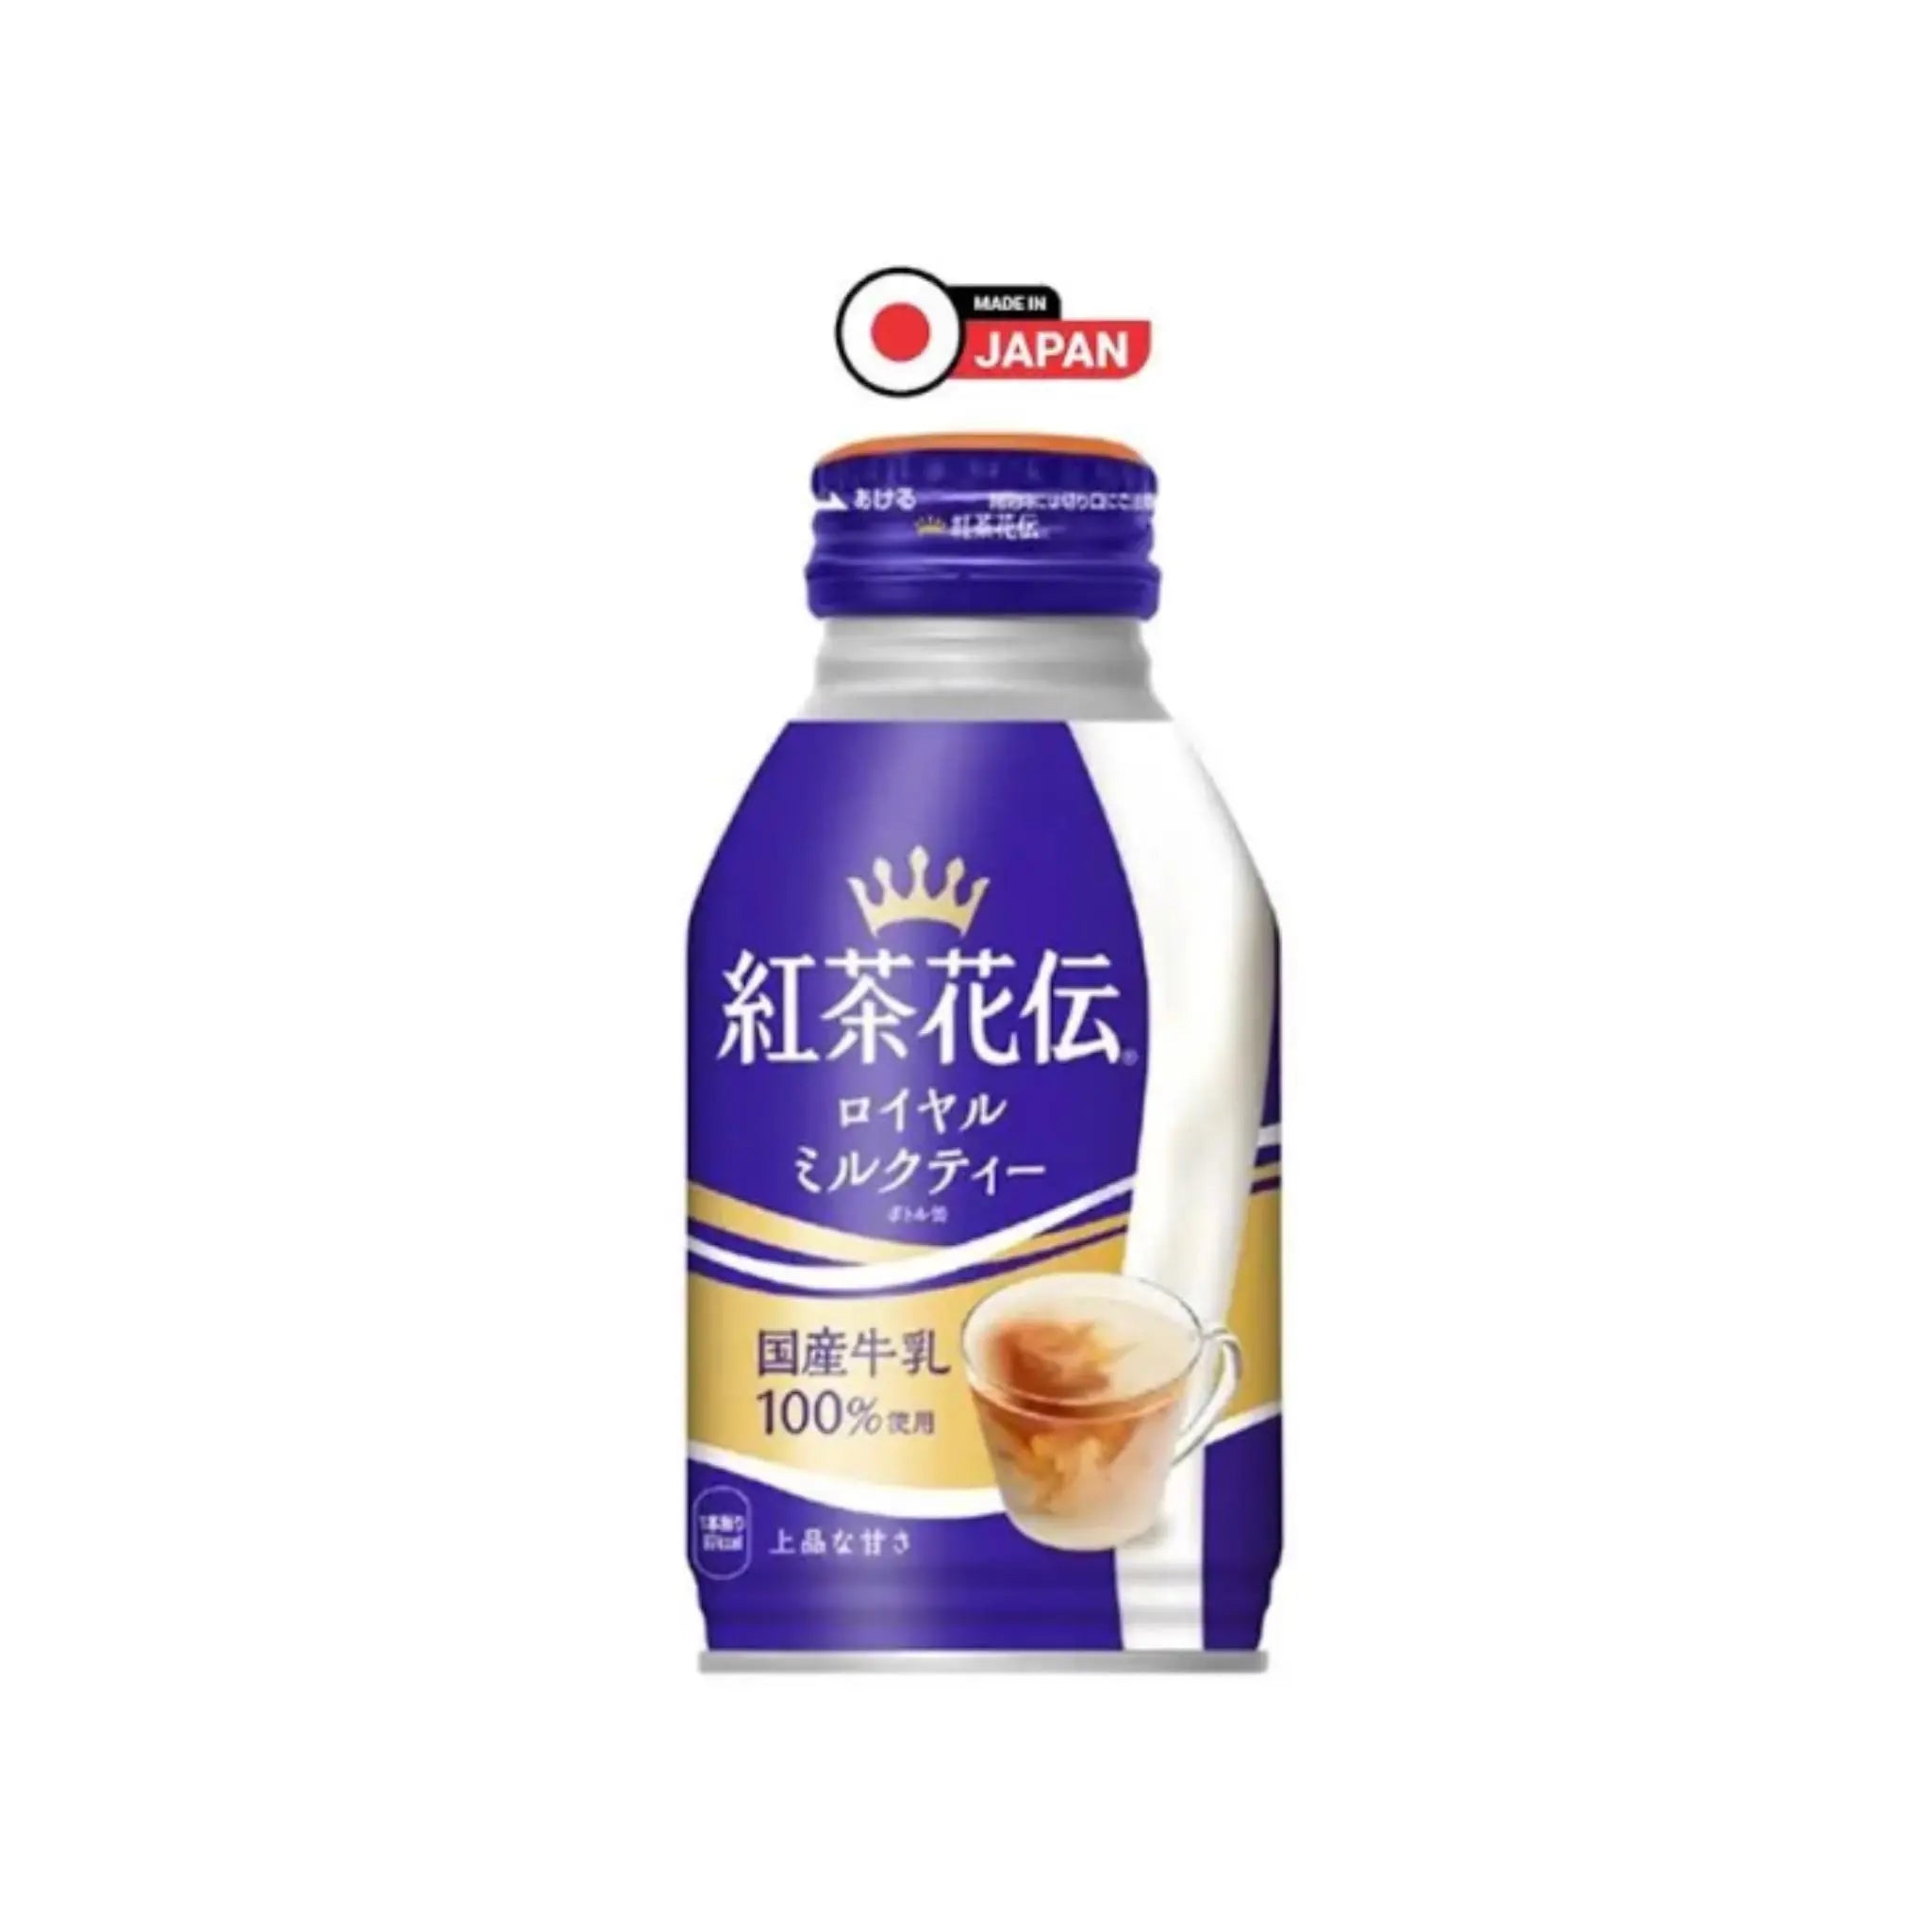 Kochakaden Royal Milk Tea JAPANESE 270ml Bottle Can - Pack of 24(1 × 24) Marino.AE